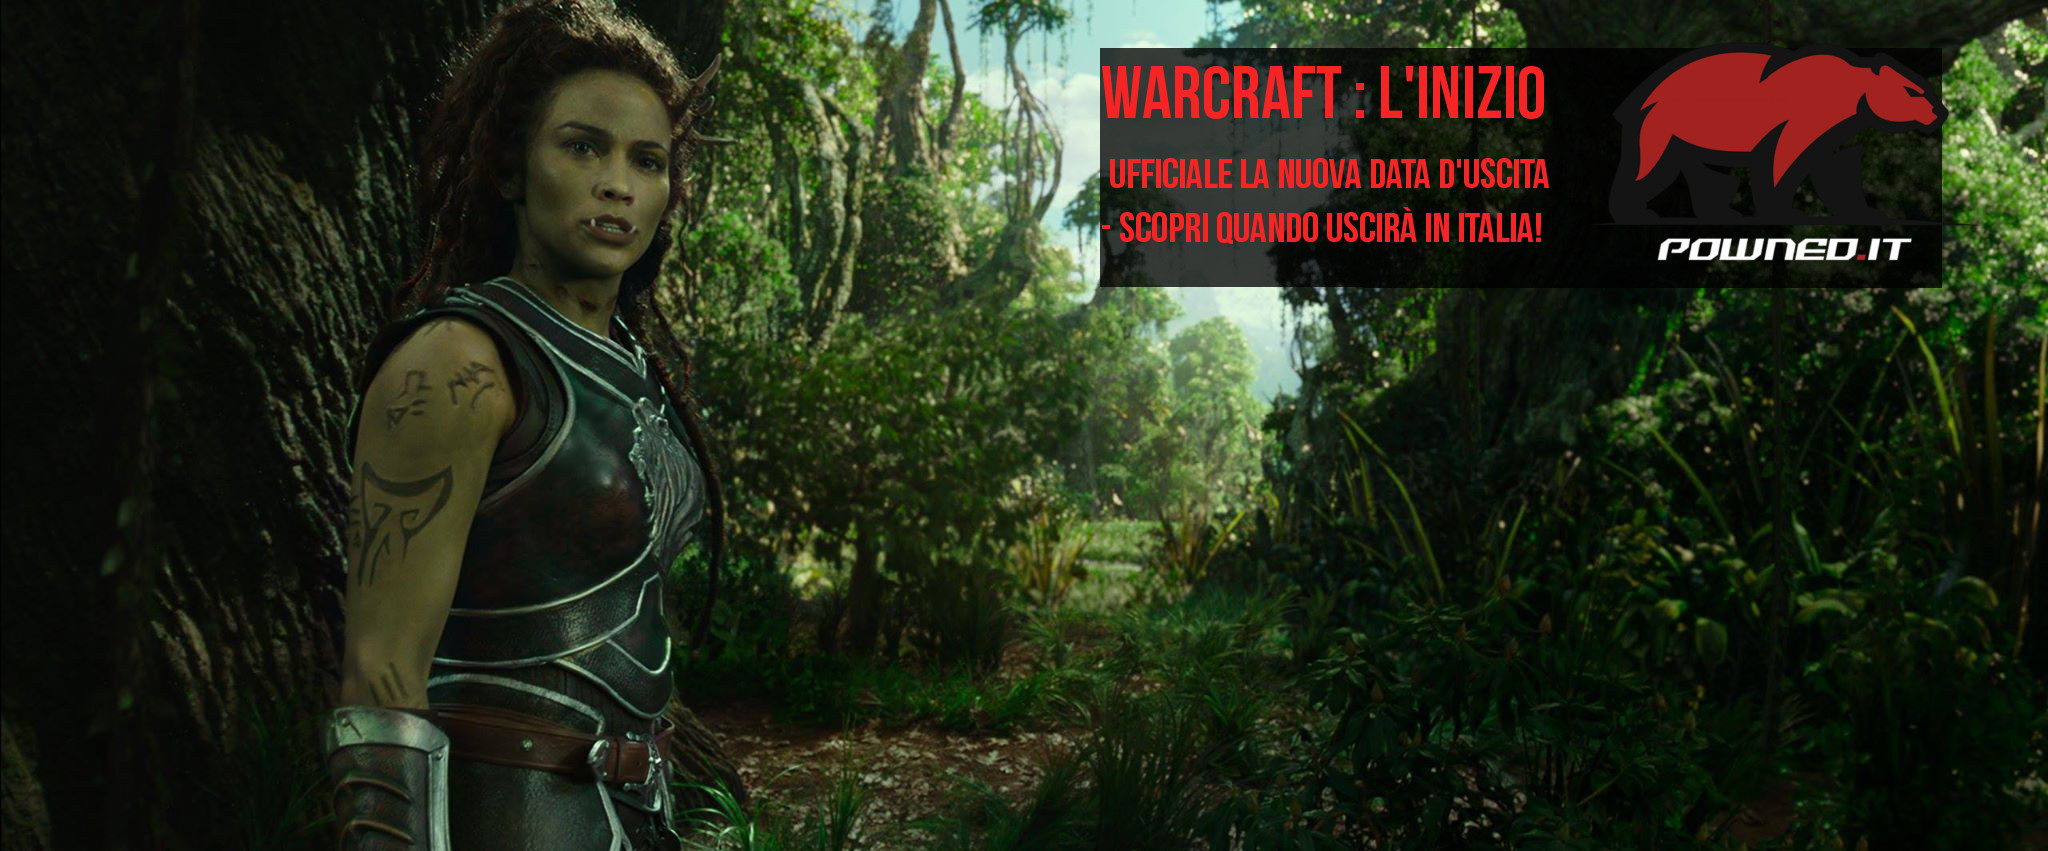 Warcraft : L’Inizio subirà un breve ritardo in Italia, scopri la nuova data d’uscita!